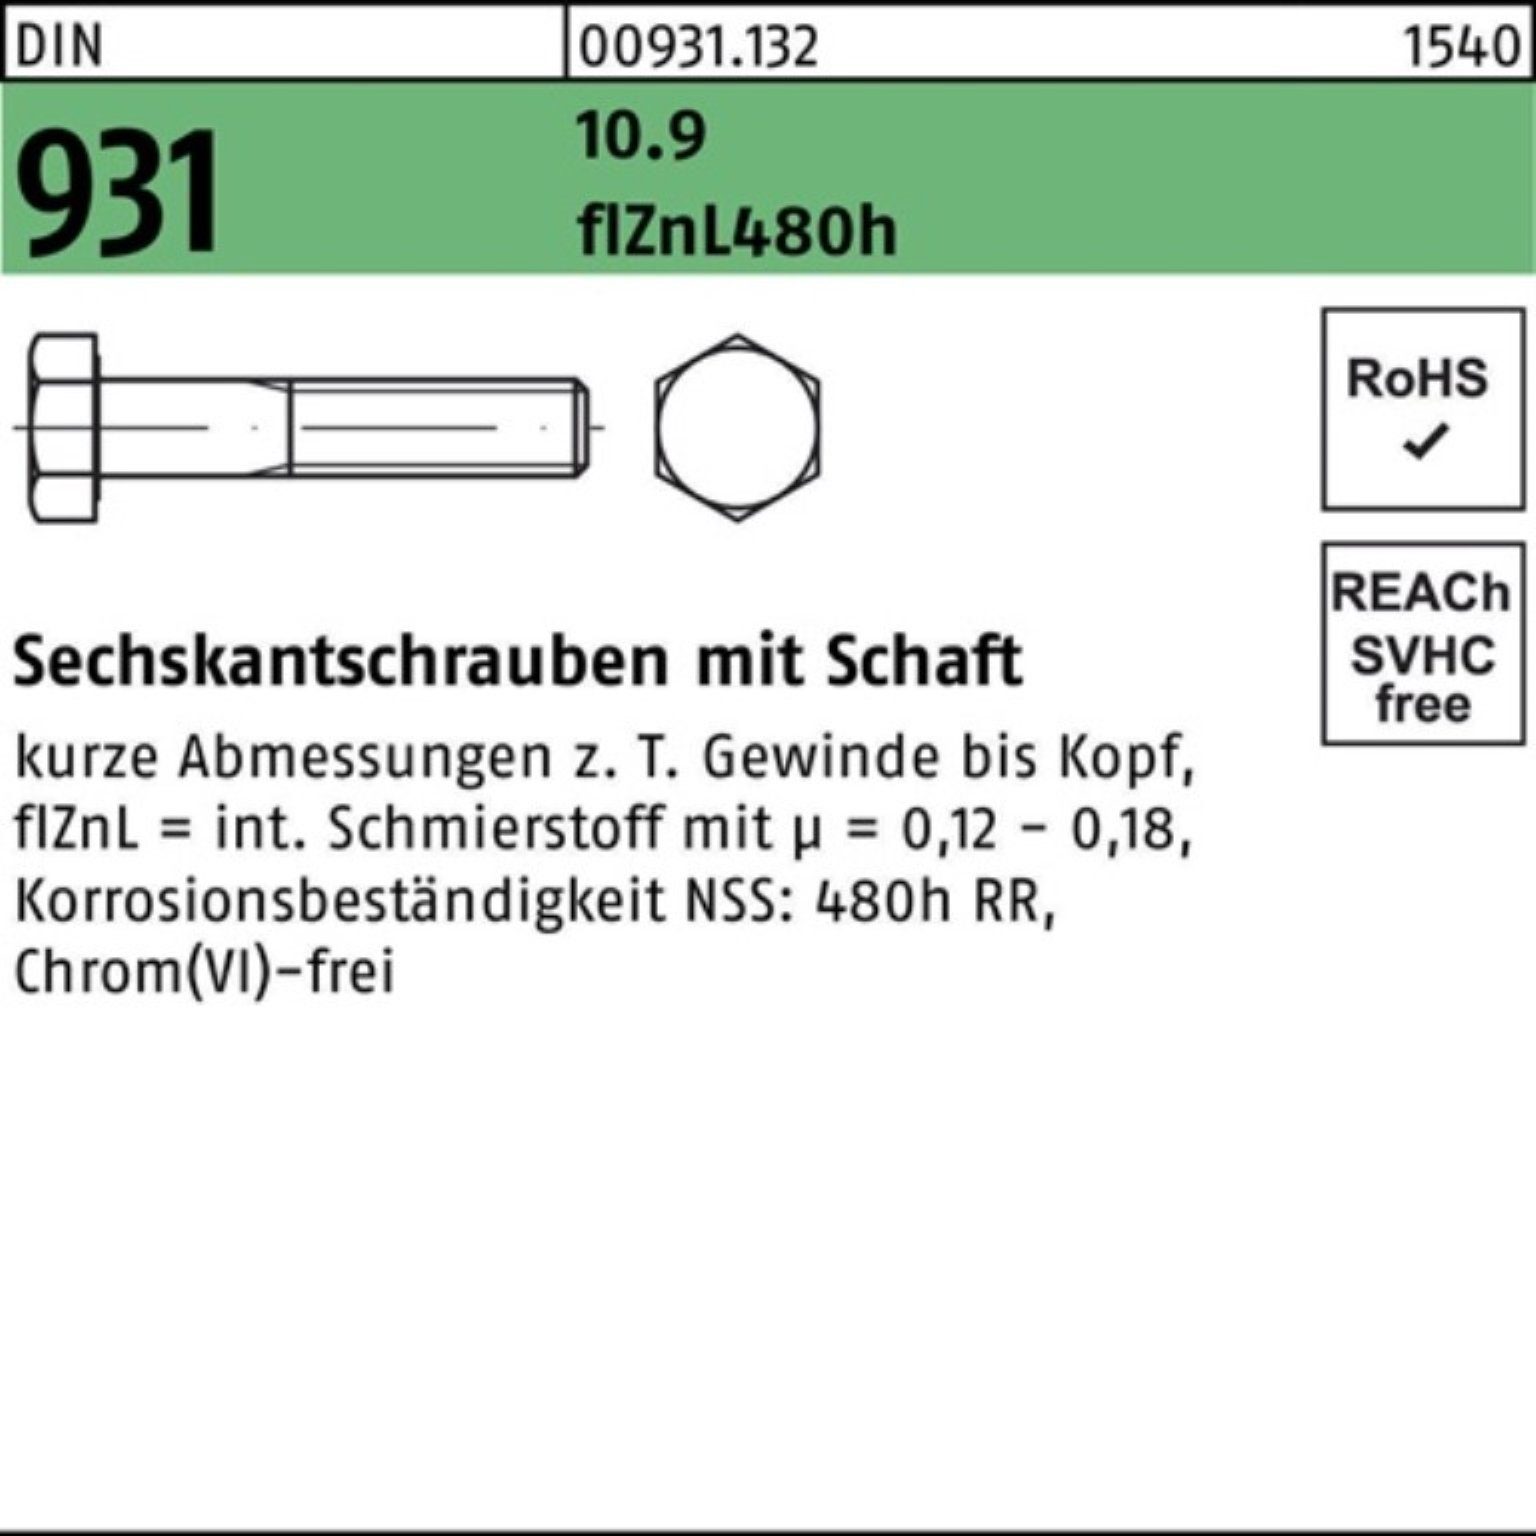 Schaft Sechskantschraube Reyher Sechskantschraube Pack 10.9 160 M24x 931 DIN flZnL/nc/x/x 100er